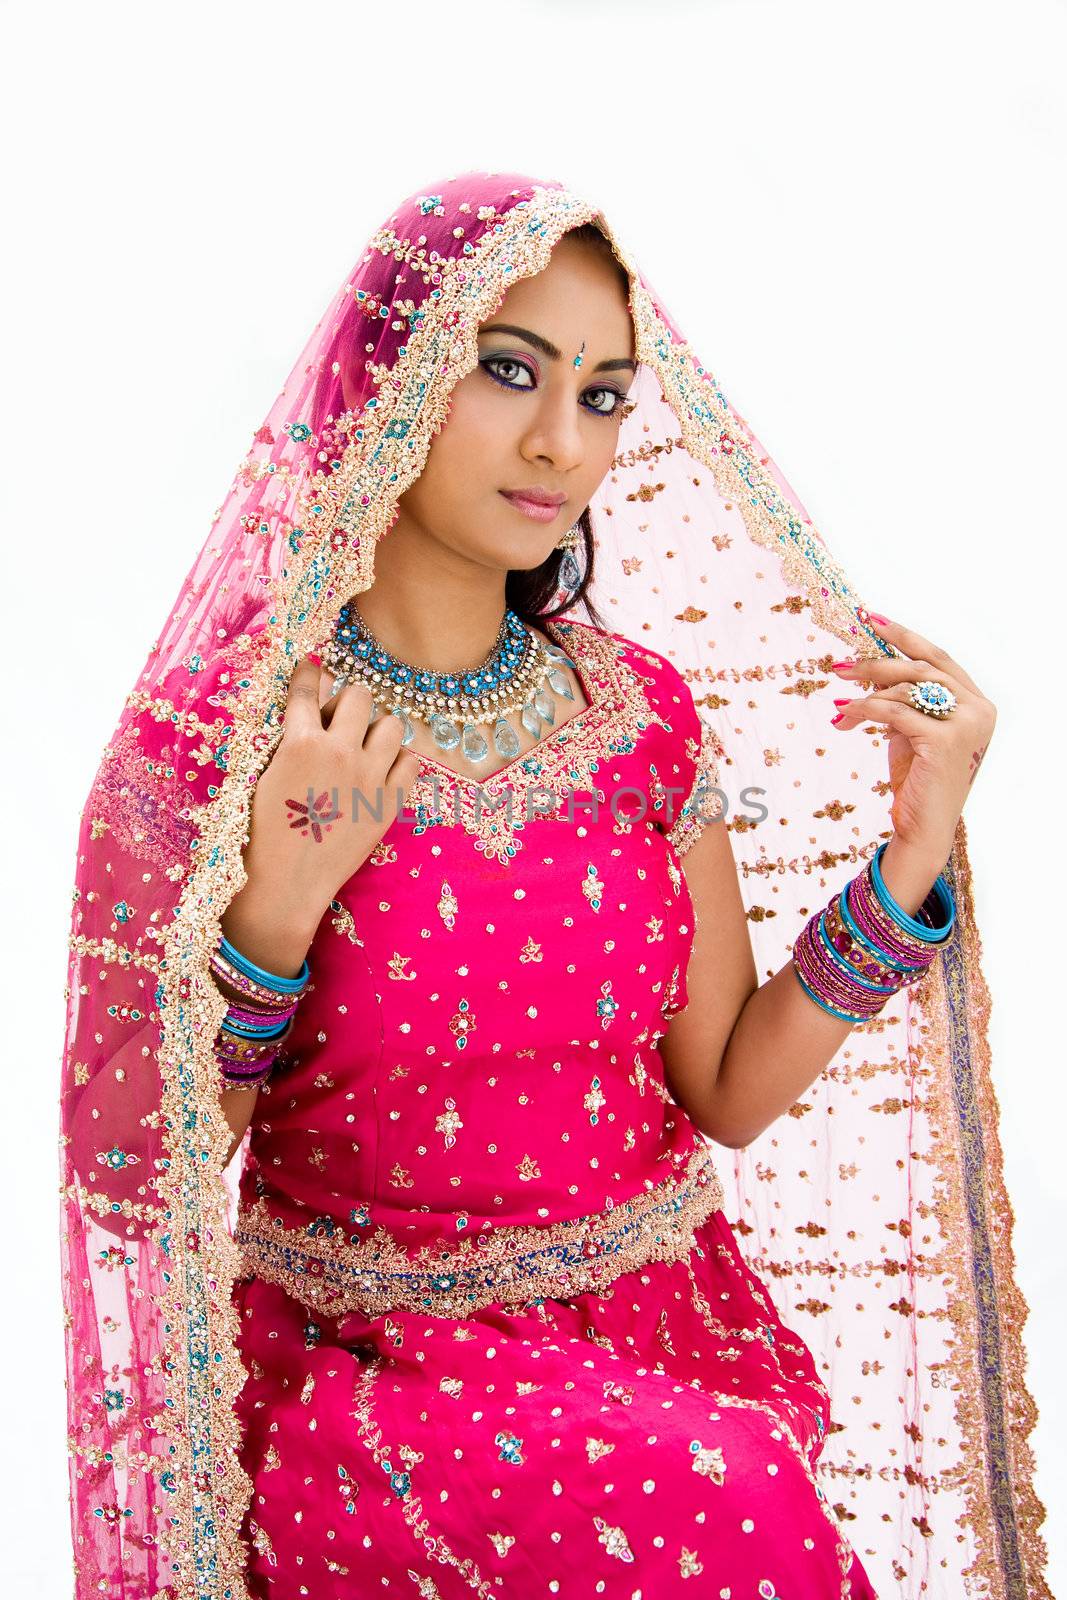 Beautiful Bangali bride by phakimata